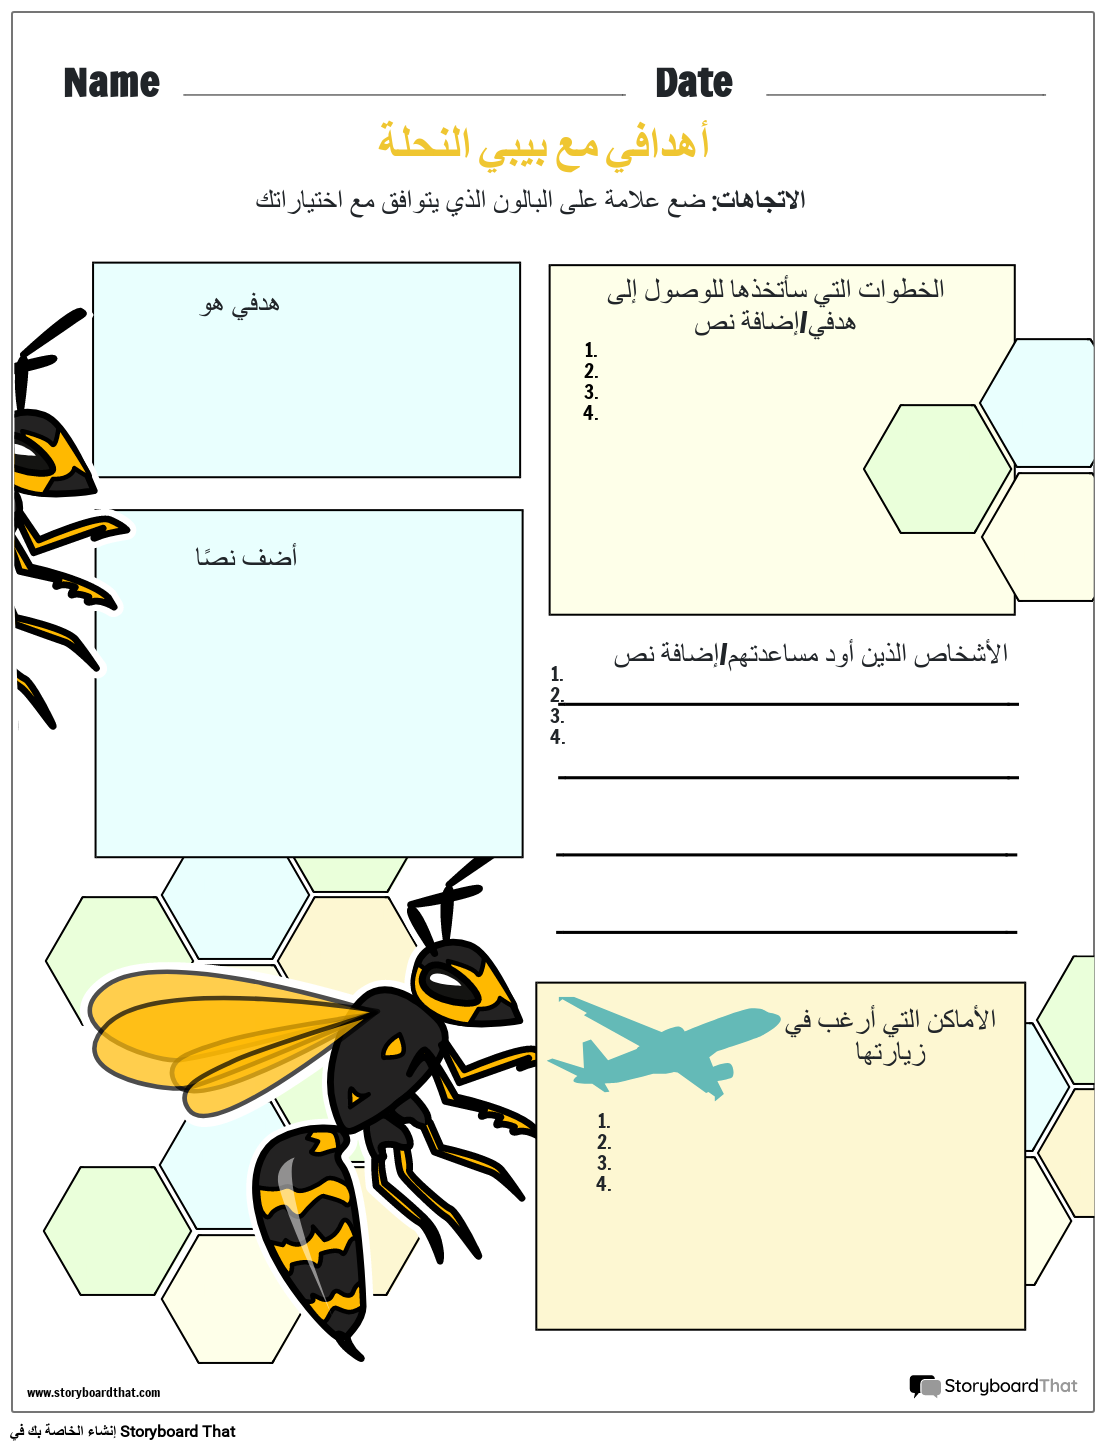 تحديد الأهداف مع BiBi النحلة